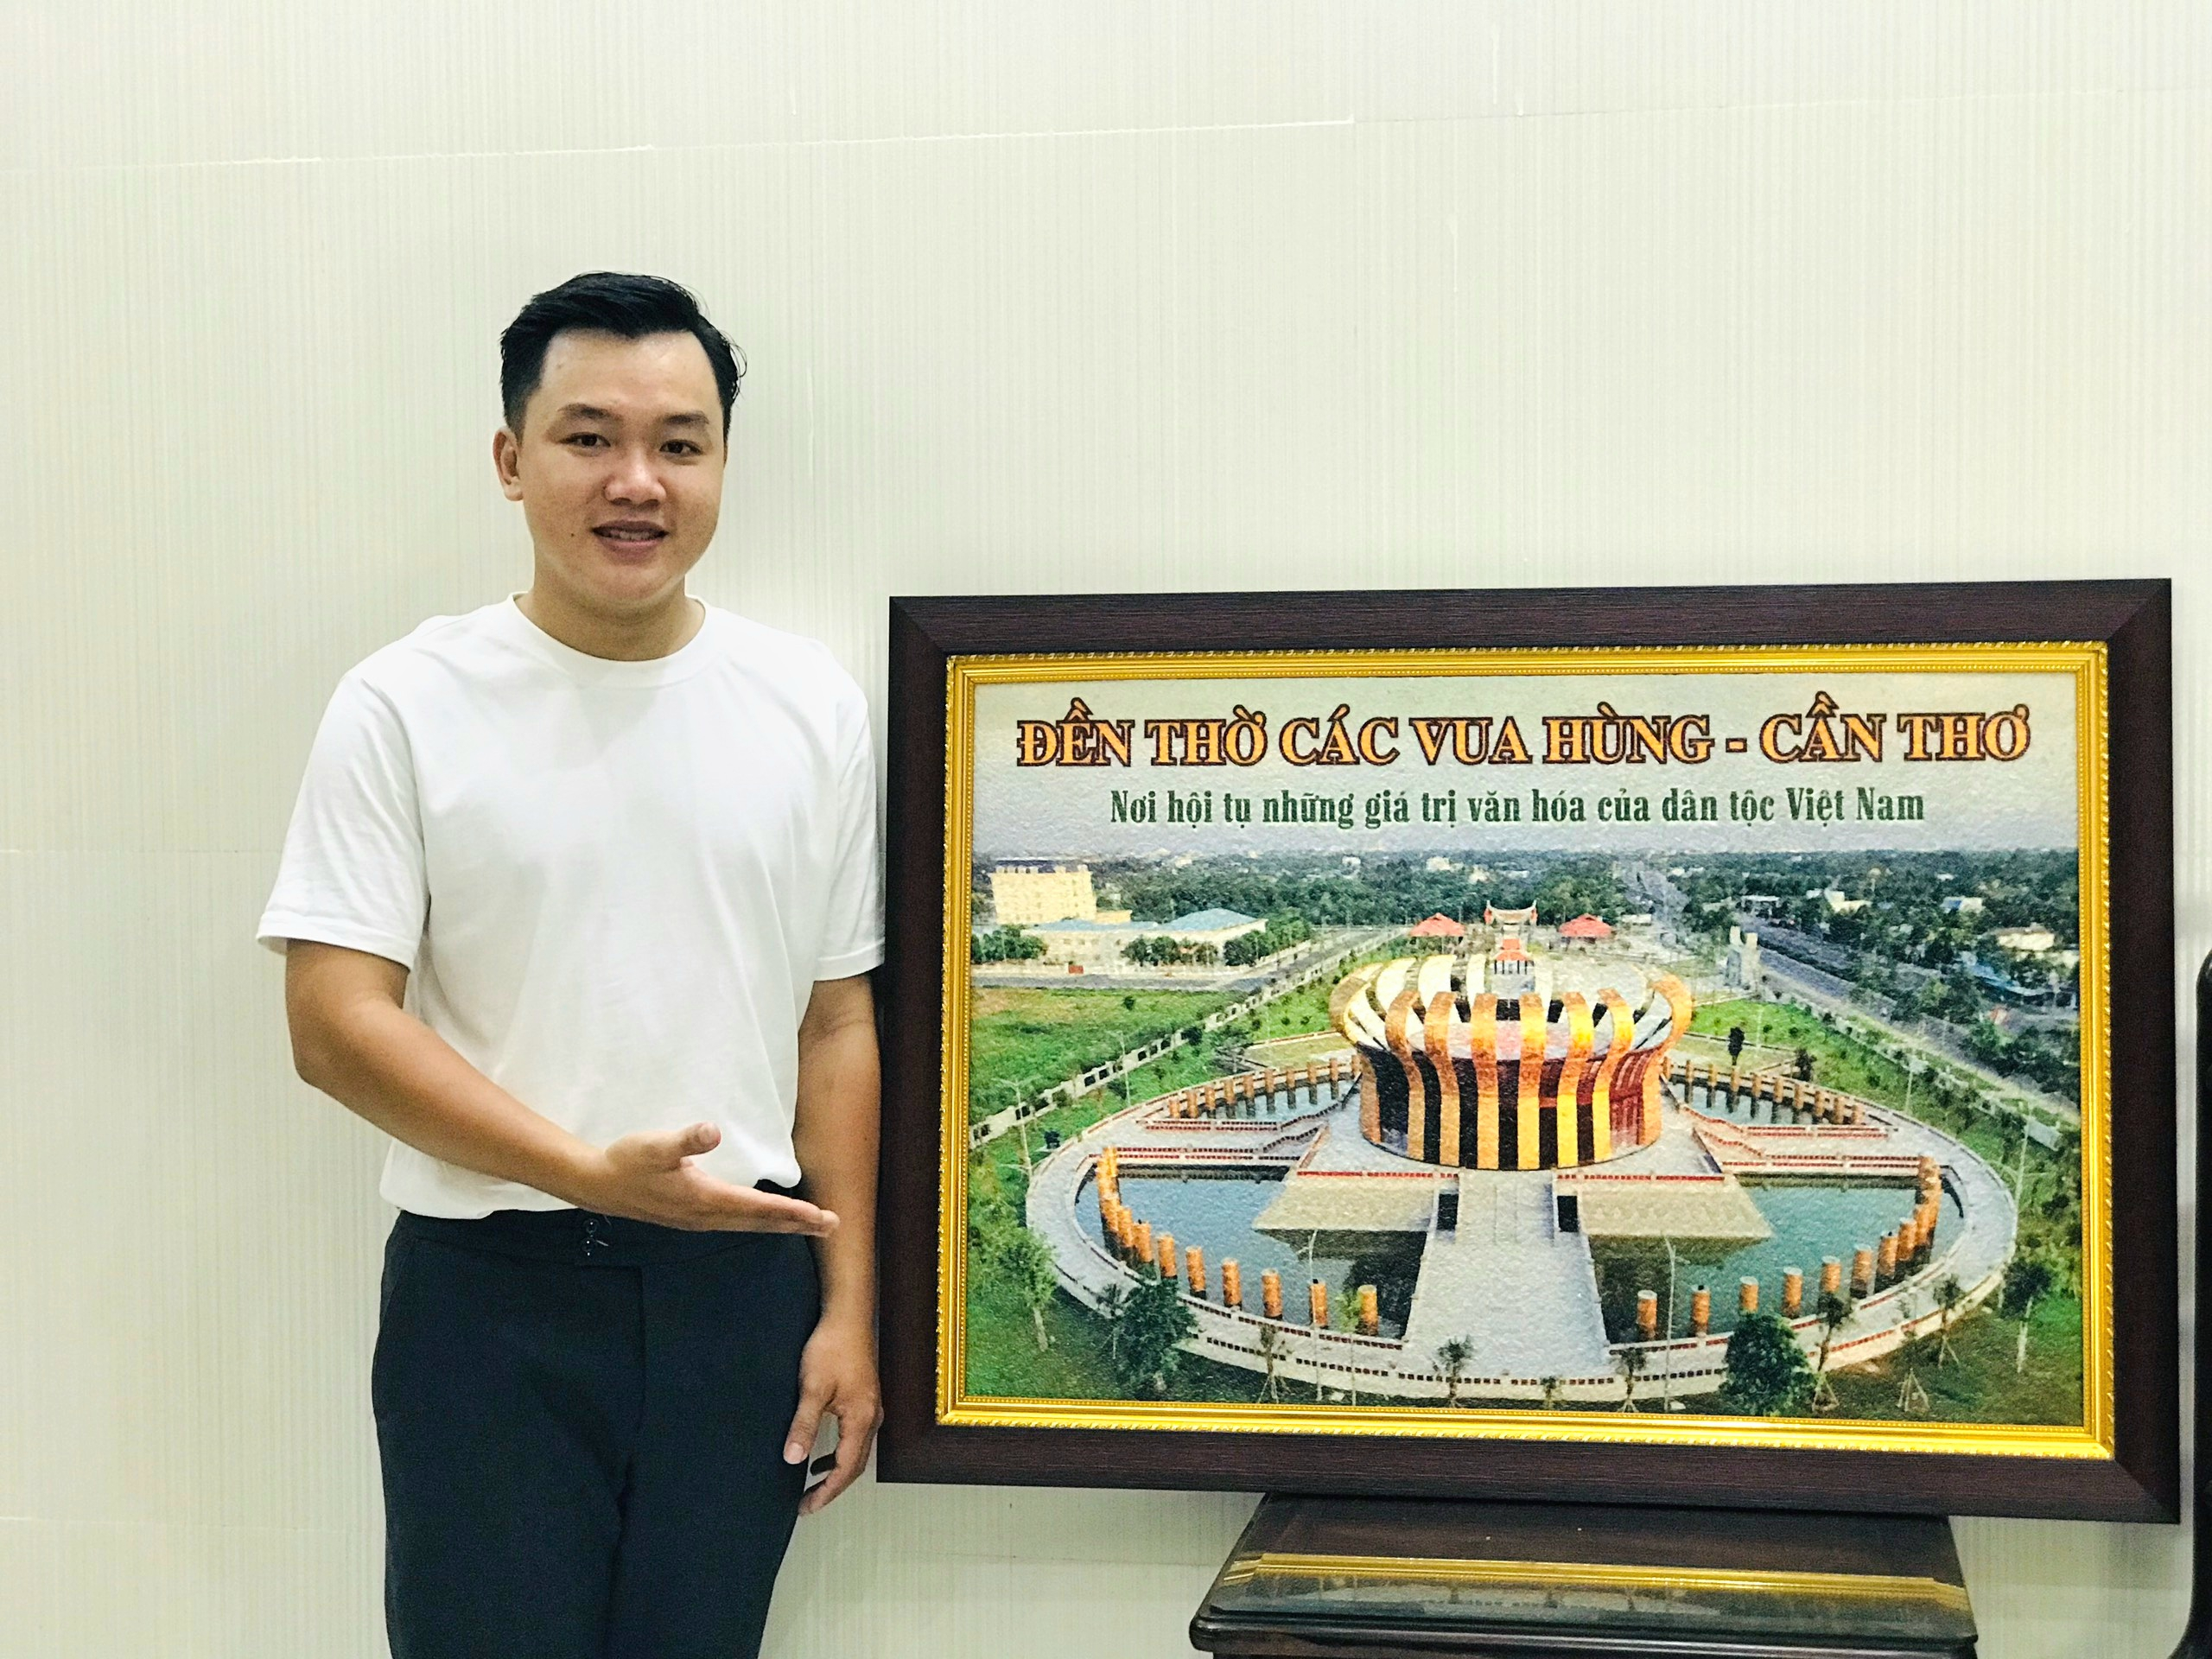 Anh Khưu Tấn Bửu (27 tuổi, ngụ Q.Ninh Kiều, Cần Thơ) đã làm ra bộ sưu tập tranh gạo với chủ đề “Hào khí Lạc Hồng”.